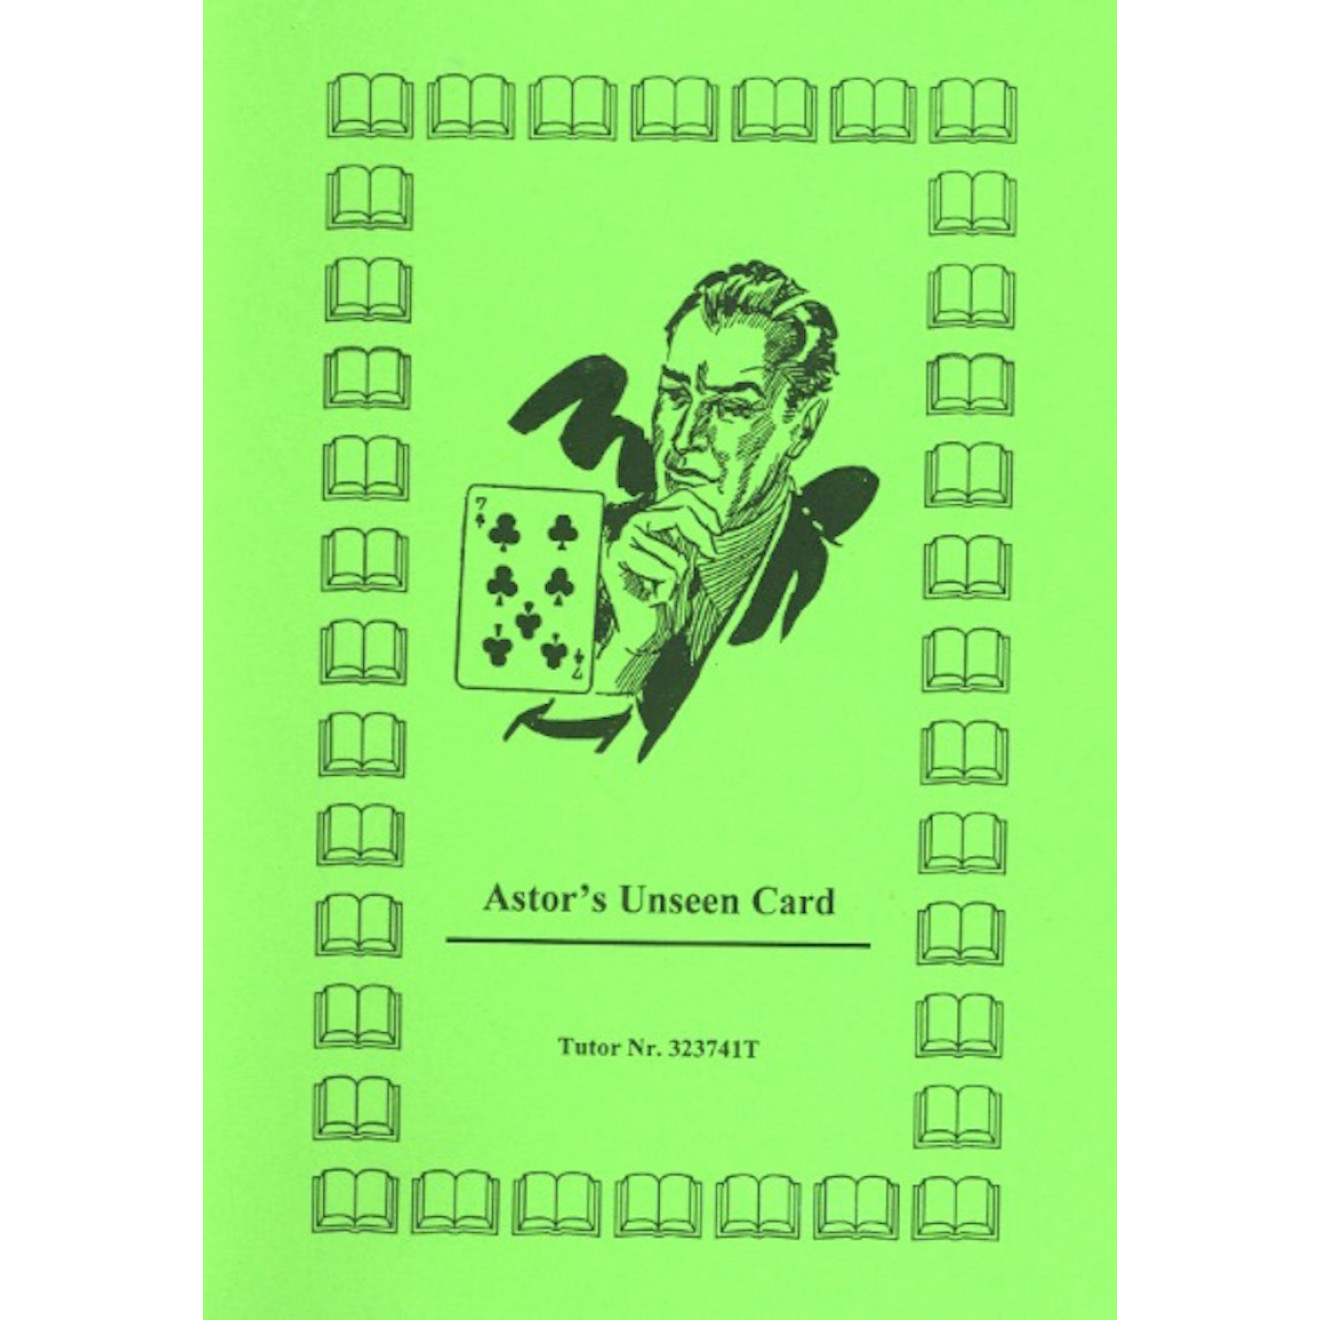 Astor's Unseen Card